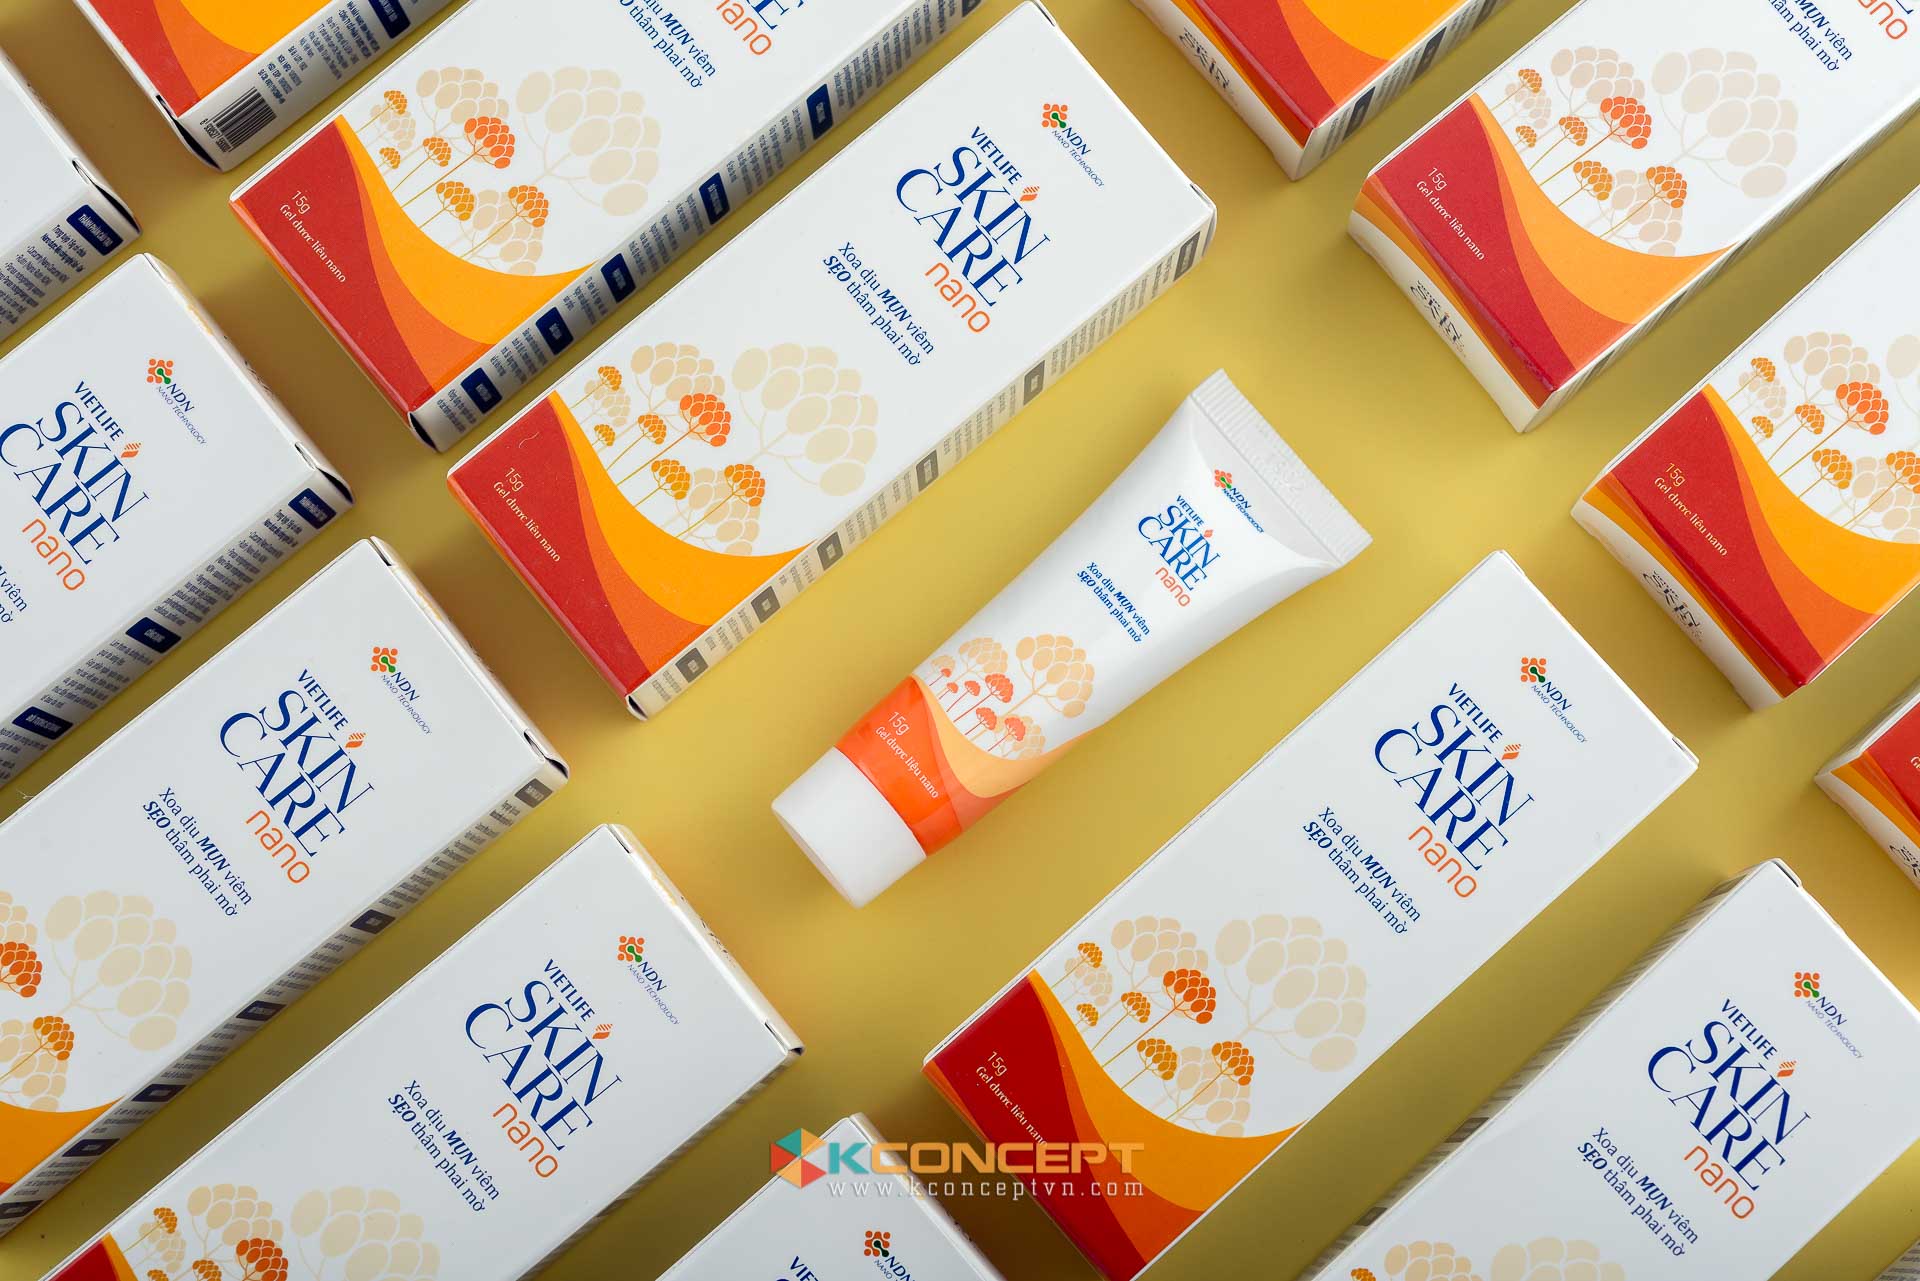 Một sản phẩm chụp ảnh sản phẩm mỹ phẩm của Kconcept cho thương hiệu mỹ phẩm Skincare Nano